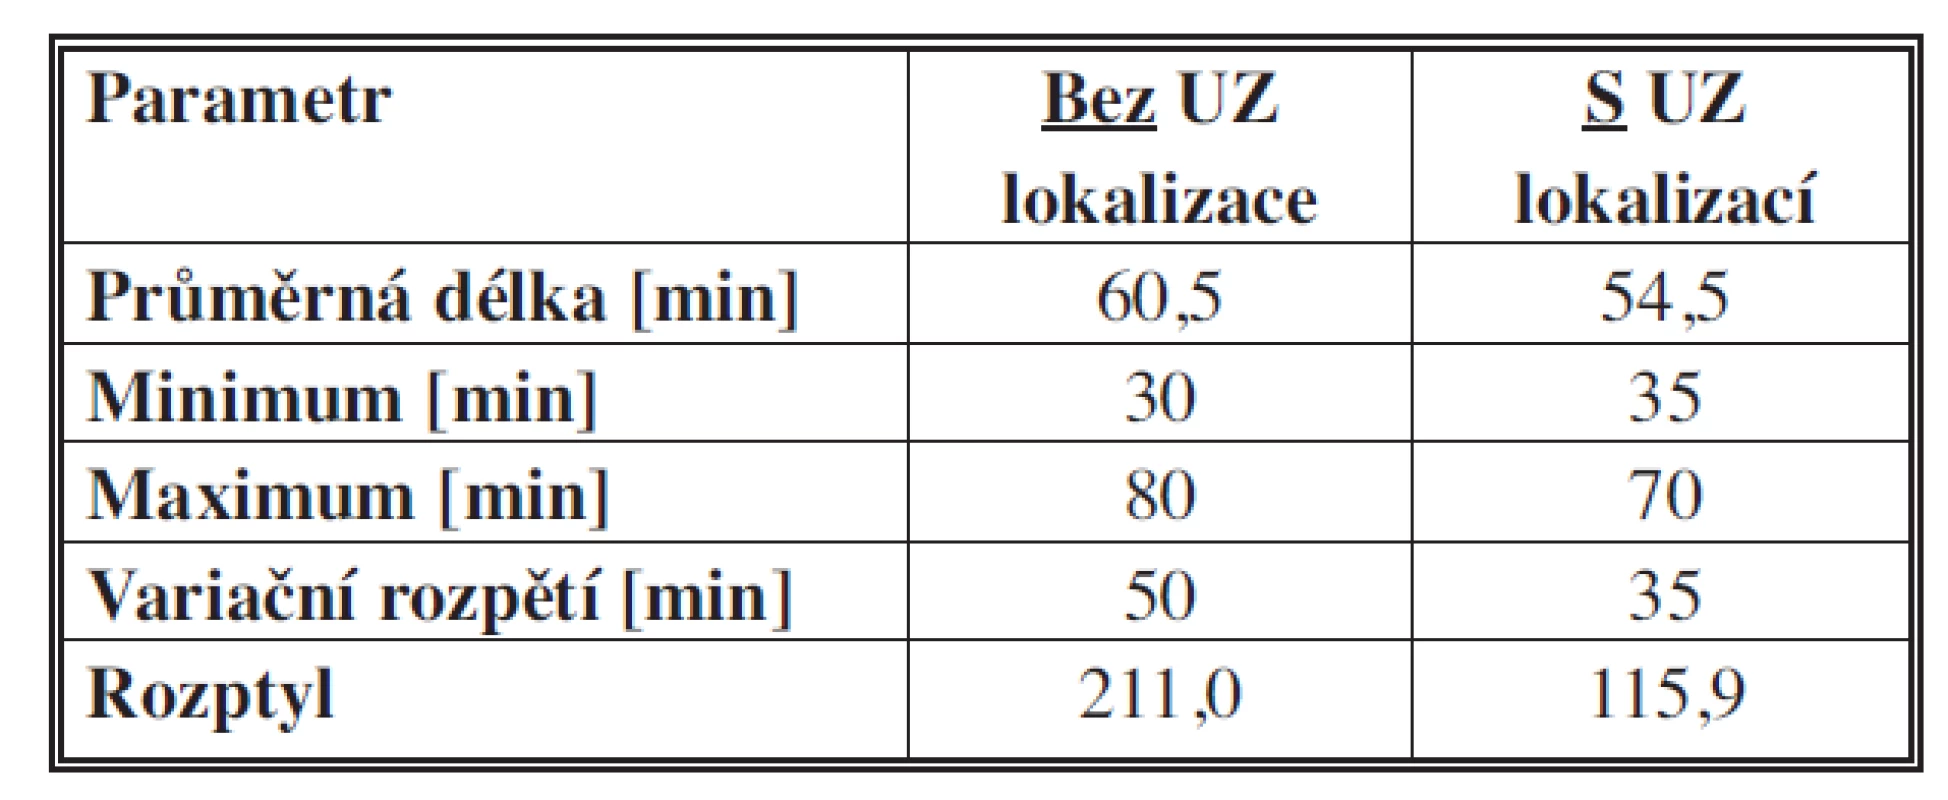 Porovnání a přínos USG detekce příštítného adenomu ve vztahu k délce operace
Tab. 2: Comparison and benefits of USG detection of parathyroid adenoma in relation to the length of operation